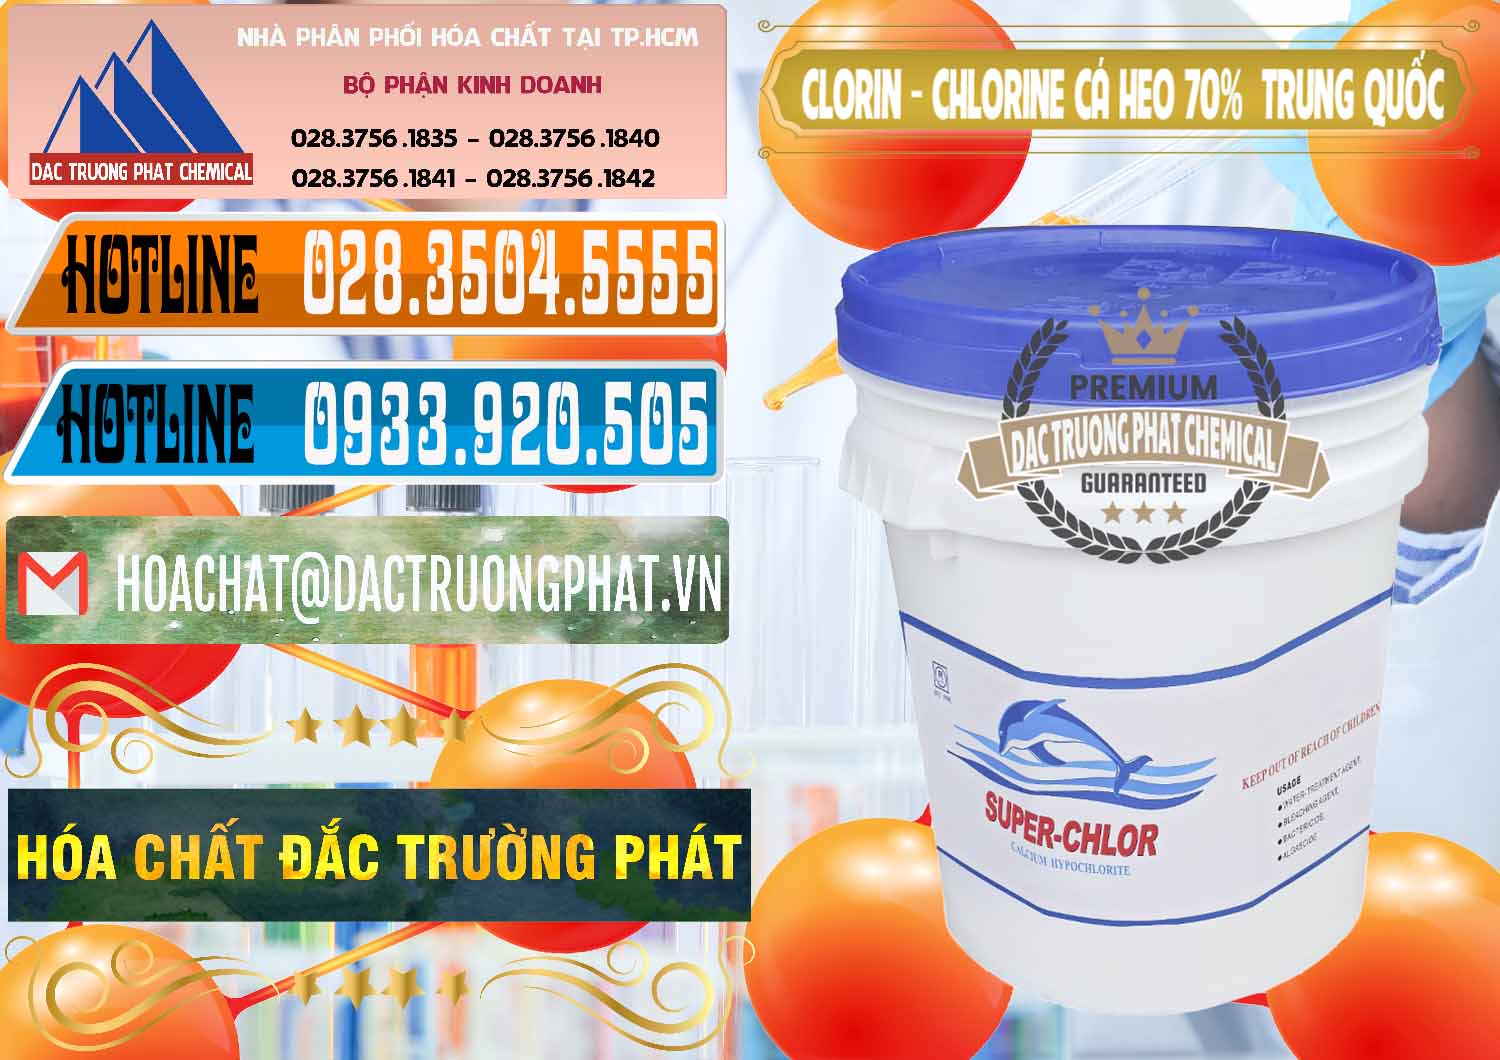 Công ty bán ( phân phối ) Clorin - Chlorine Cá Heo 70% Super Chlor Nắp Xanh Trung Quốc China - 0209 - Cty chuyên kinh doanh ( phân phối ) hóa chất tại TP.HCM - stmp.net